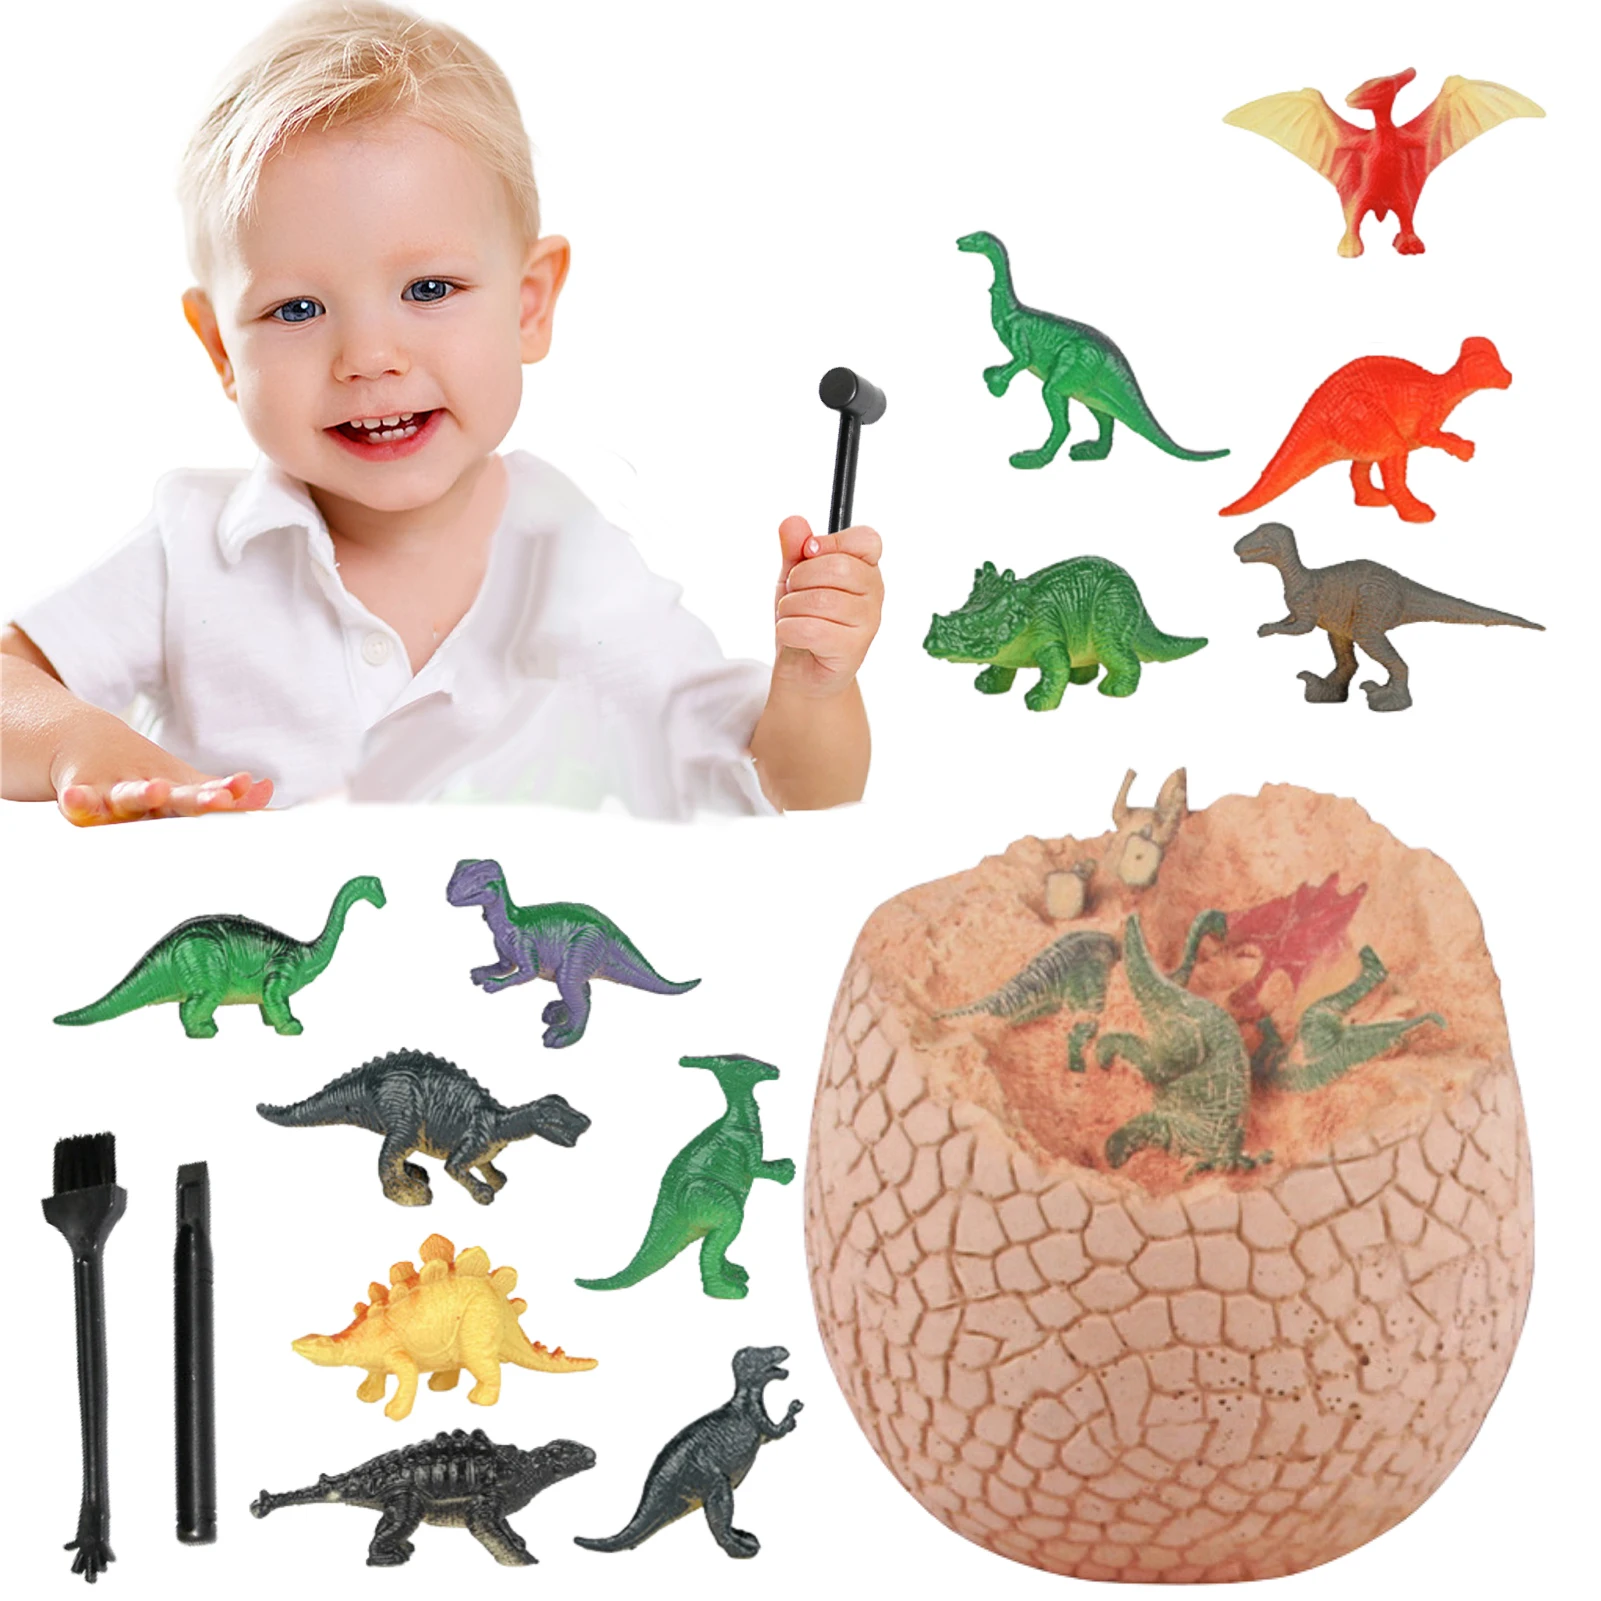 

Набор для сбора Яйца динозавра, набор для сбора Яйца динозавра, пасхальное яйцо, игрушки динозавра, археология, научные поделки, подарки для ...